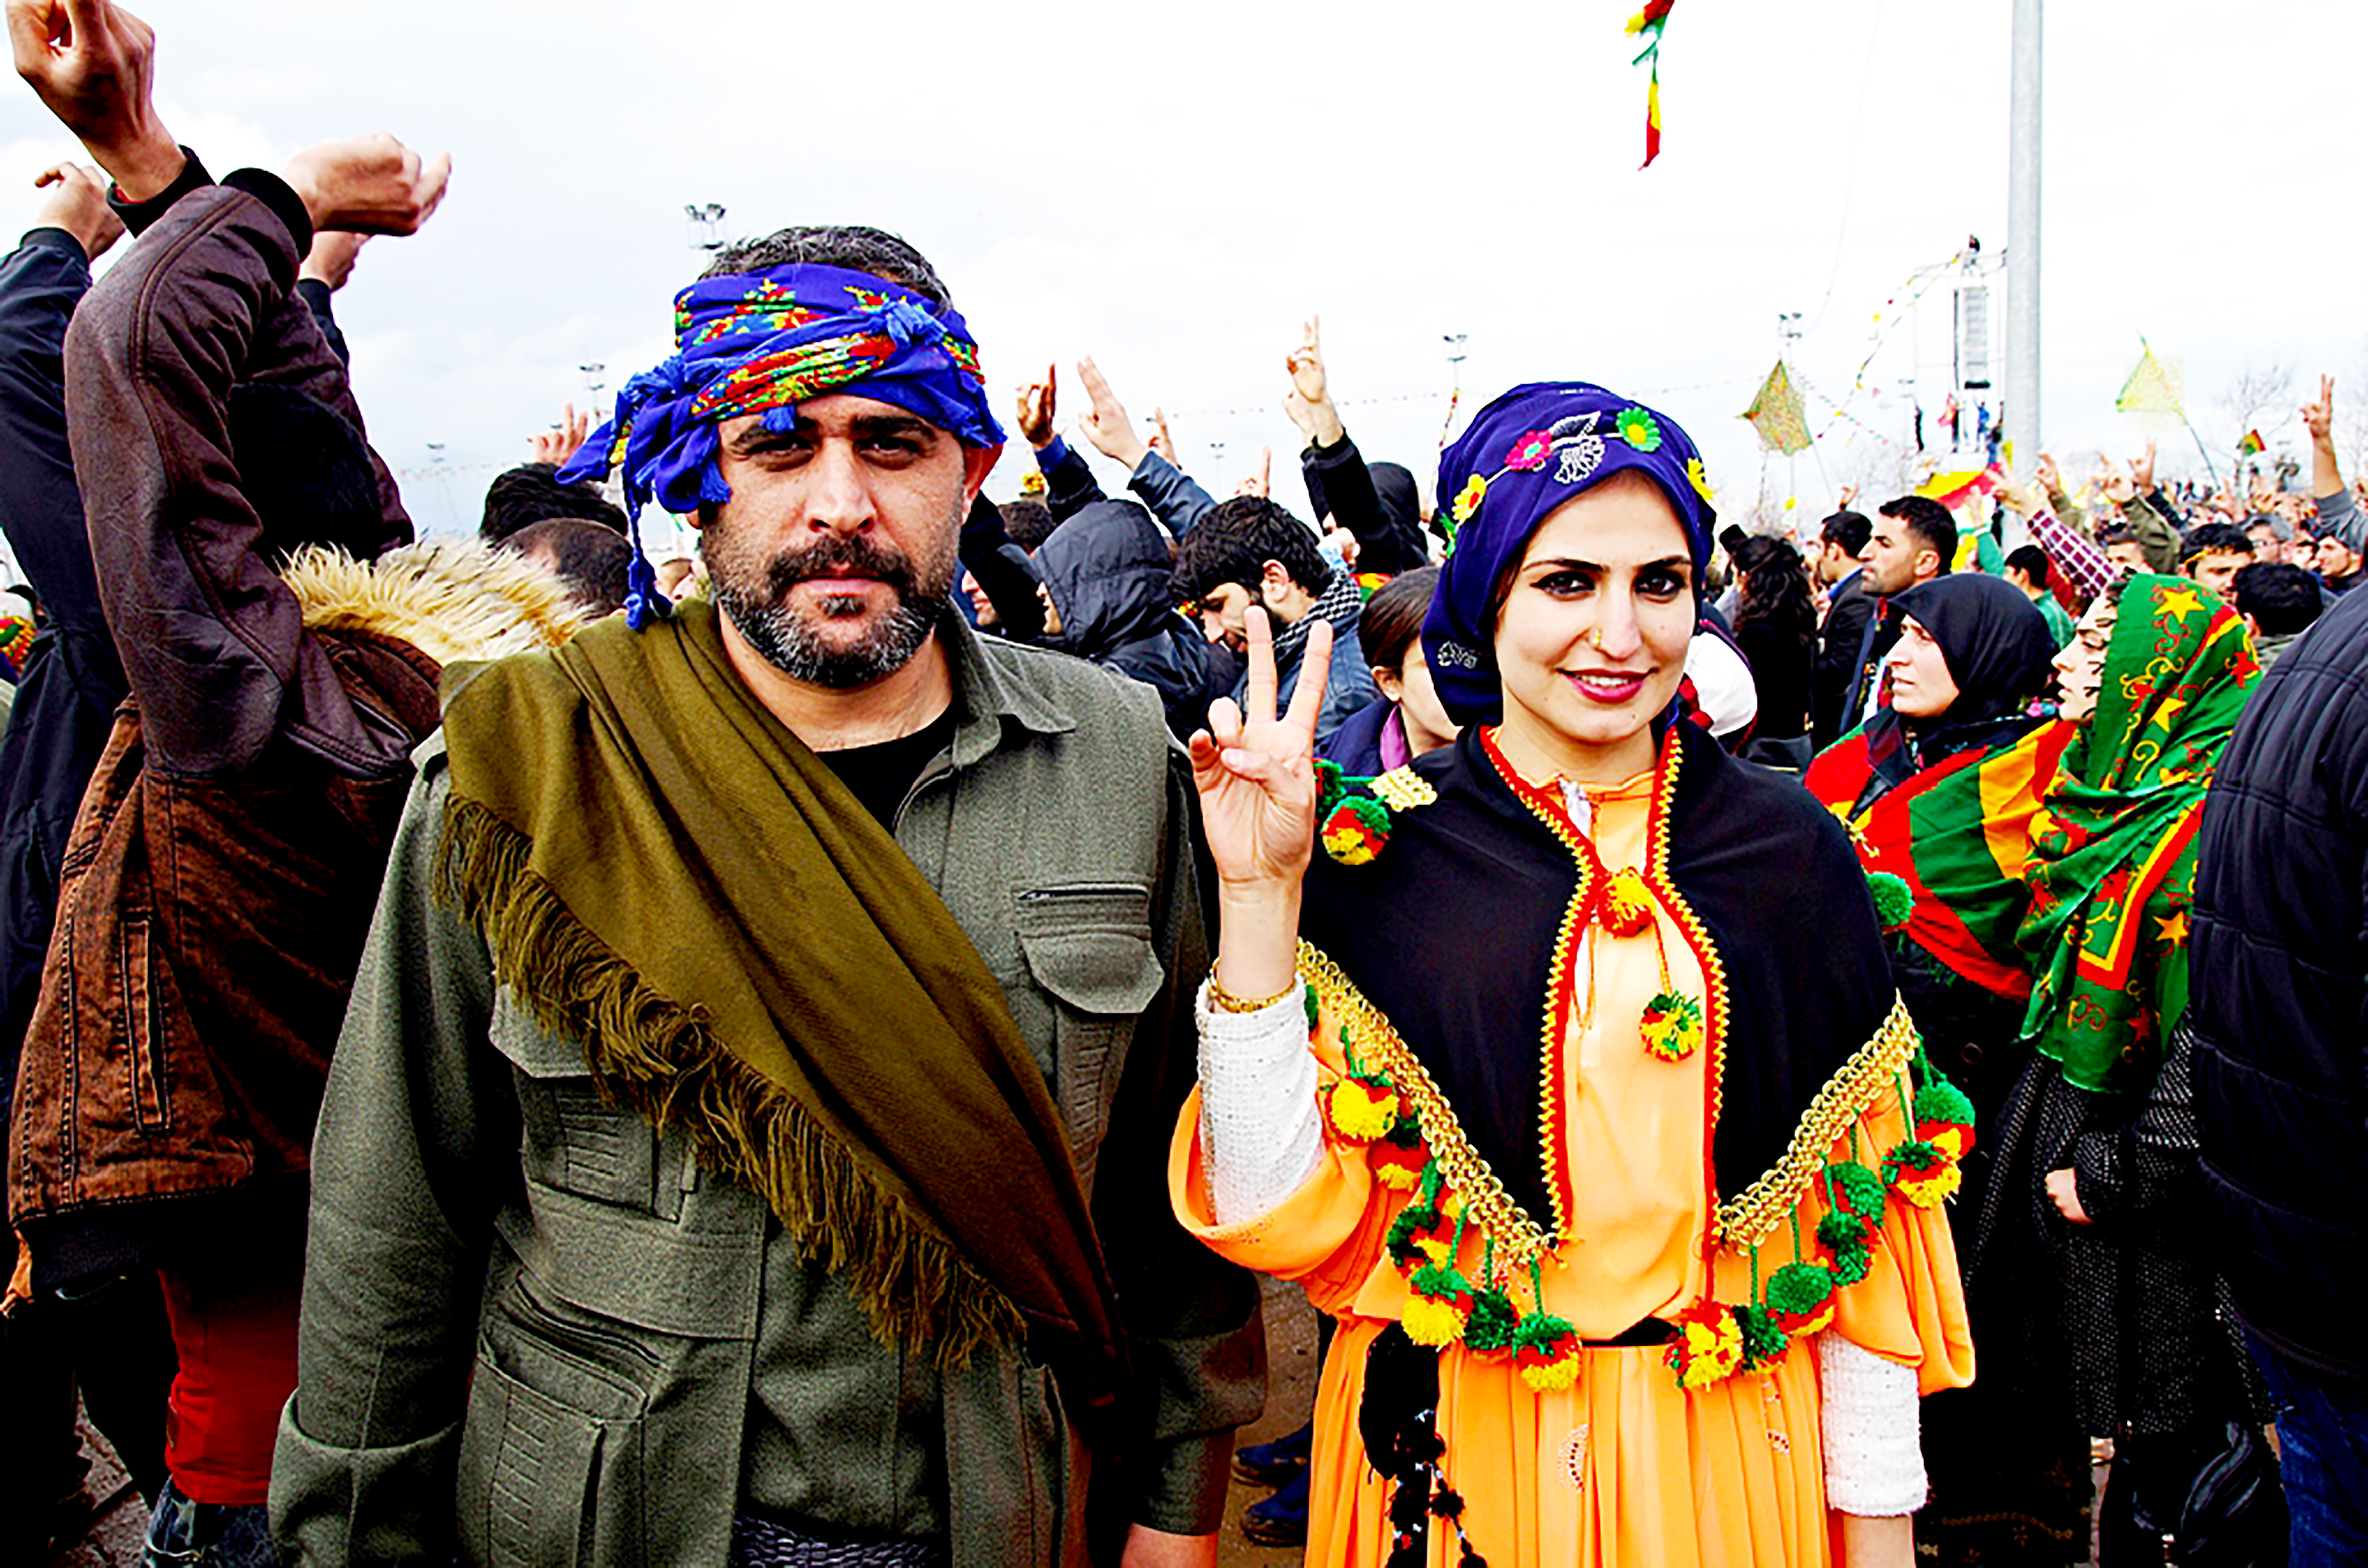 Fotoğrafçı Süer'in dergide yayınlanan fotoğraflarından biri. Diyarbakır, 2015 Newrozu